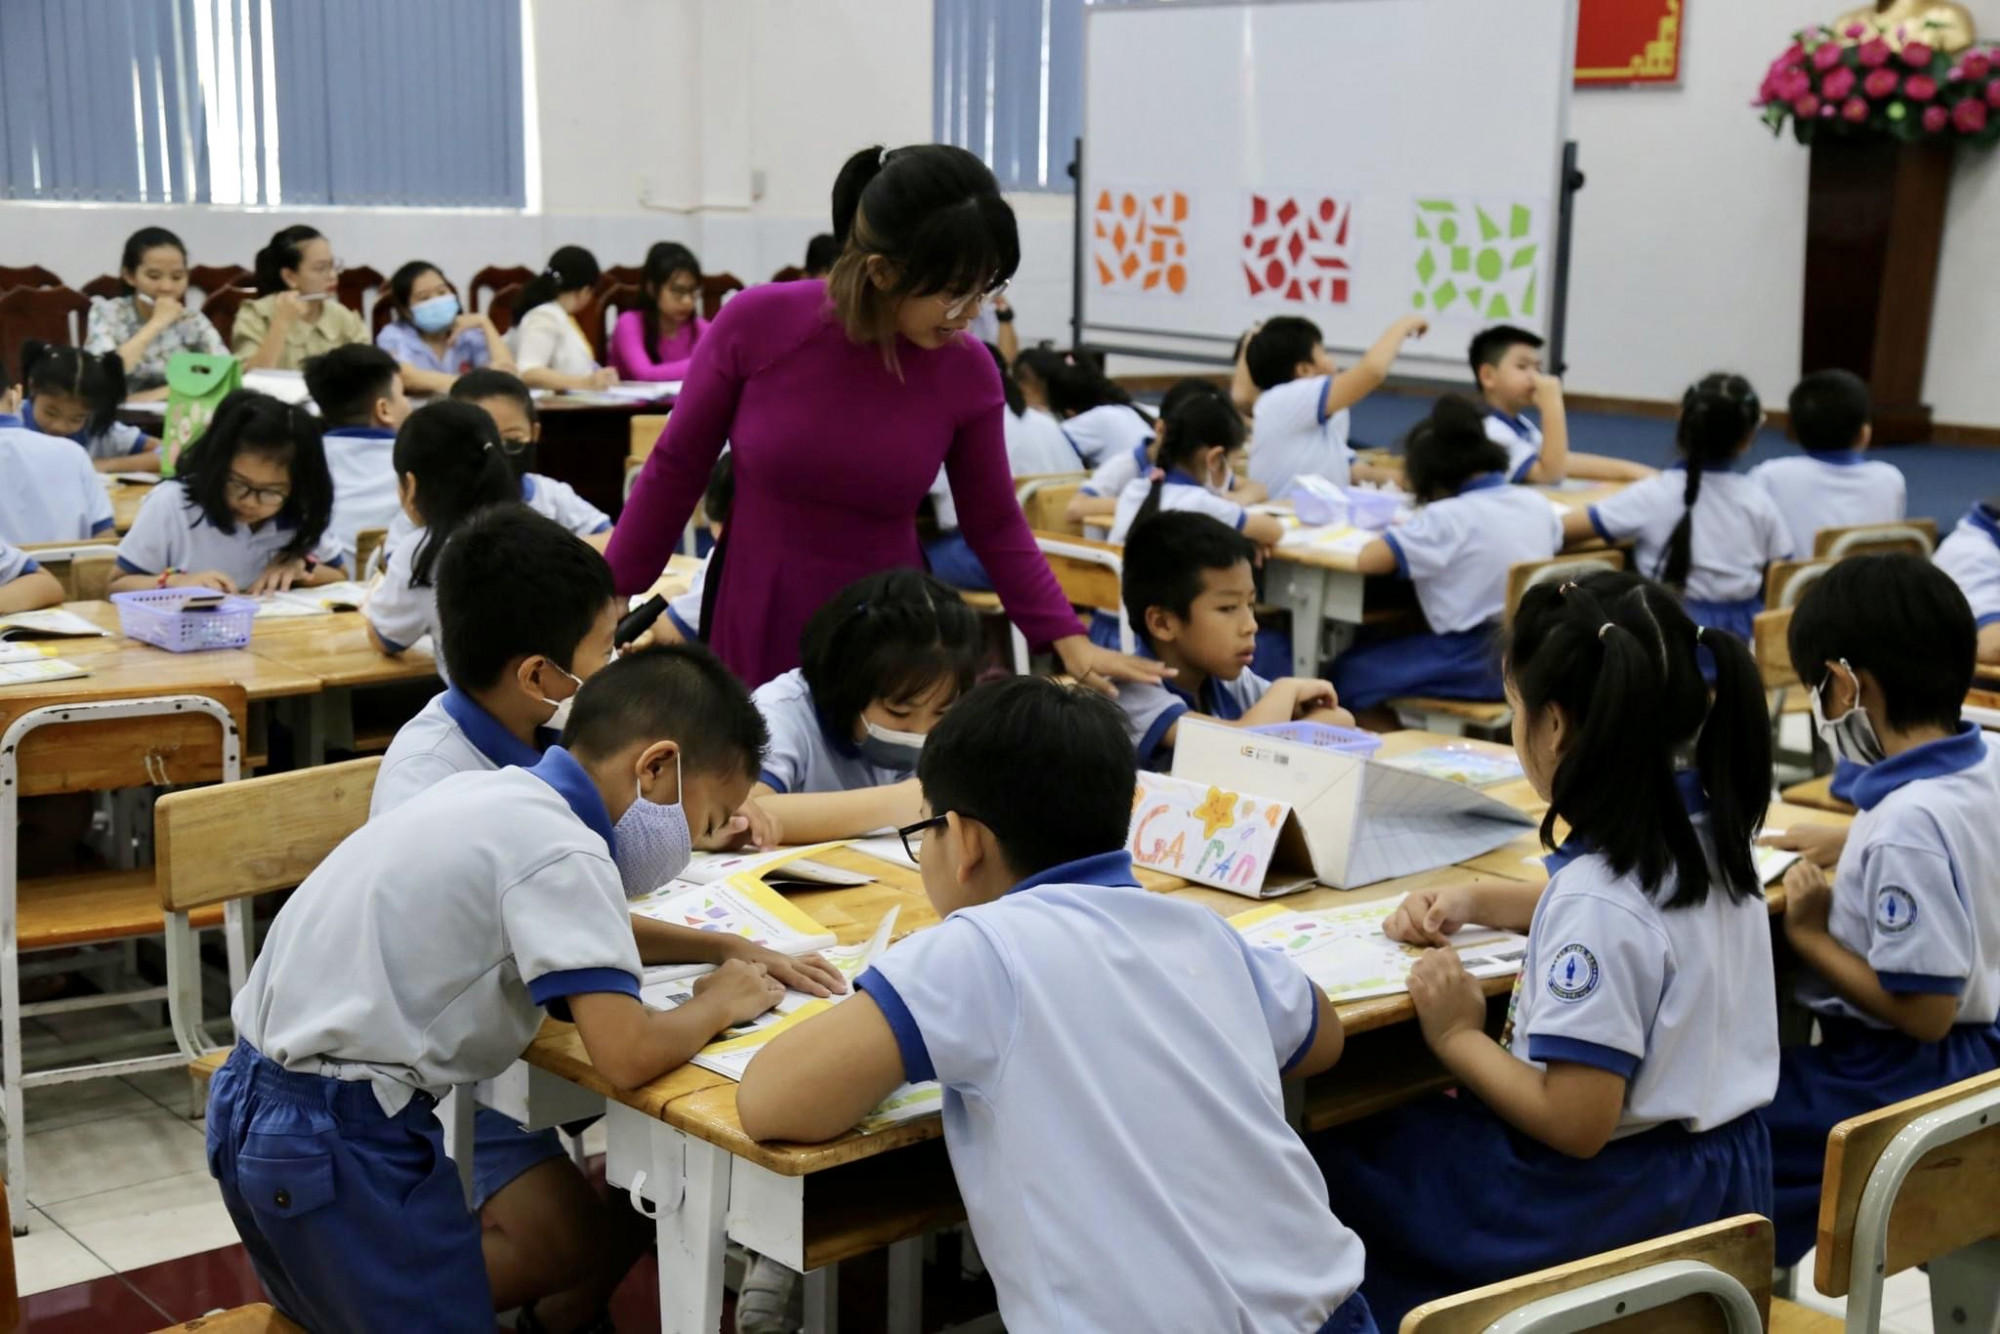 Chỉ 9% giáo viên tiểu học ngoài công lập TPHCM đạt chuẩn trình độ đào tạo